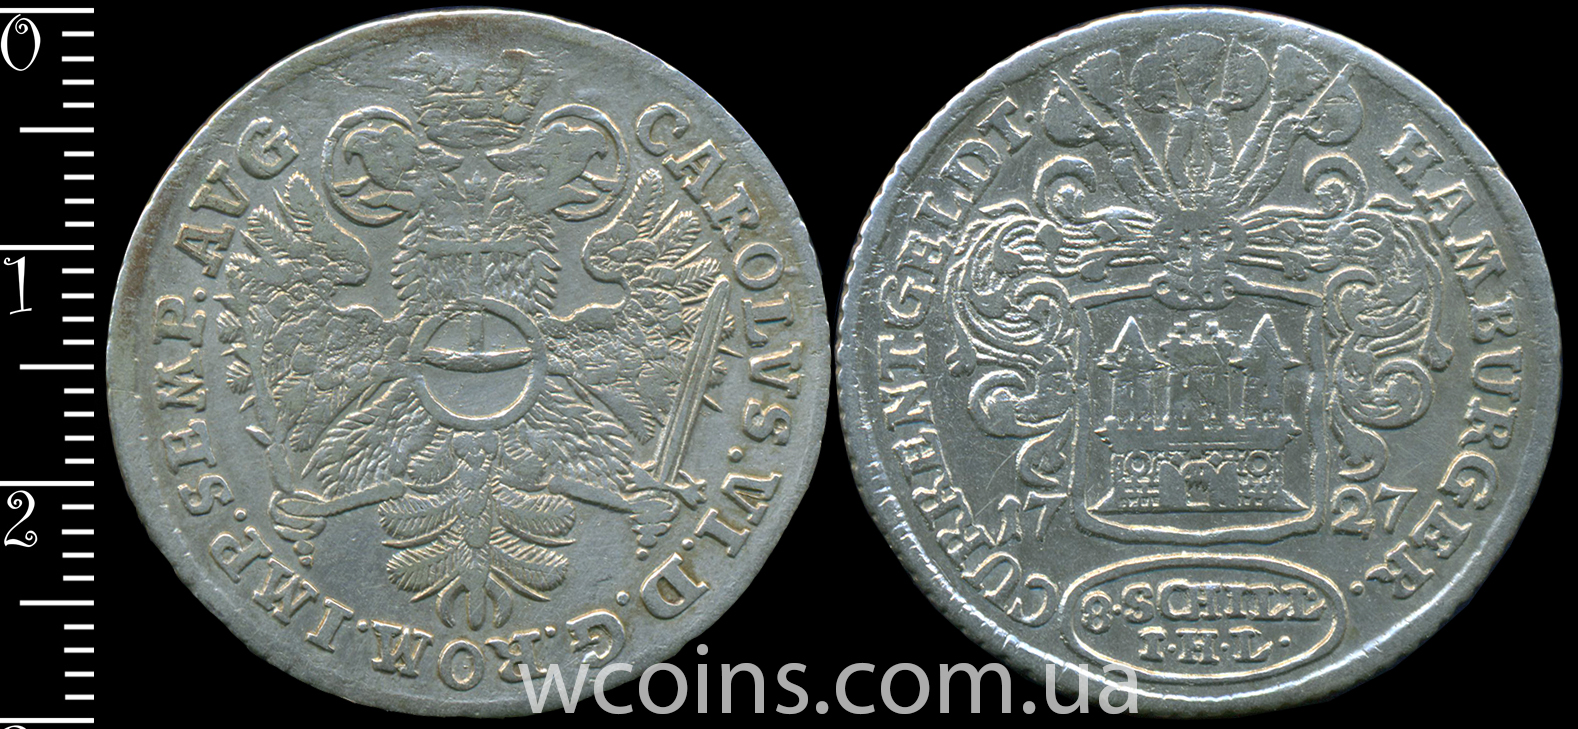 Coin Hamburg 8 shilling 1727 IHL